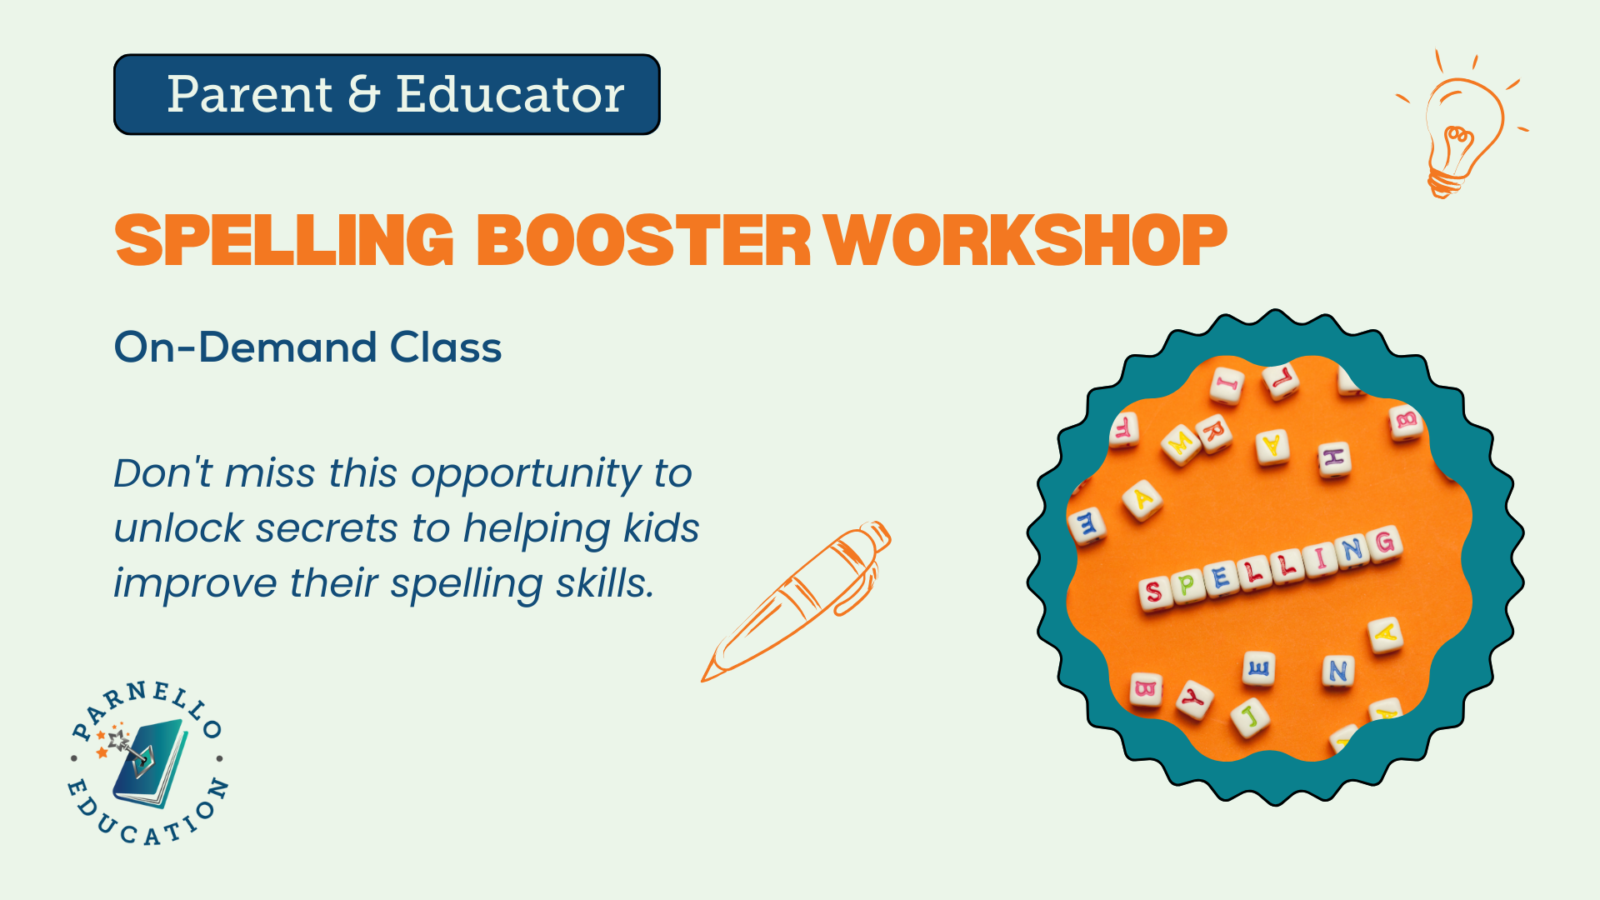 Spelling Booster Workshop V2 (1920 x 1080 px)